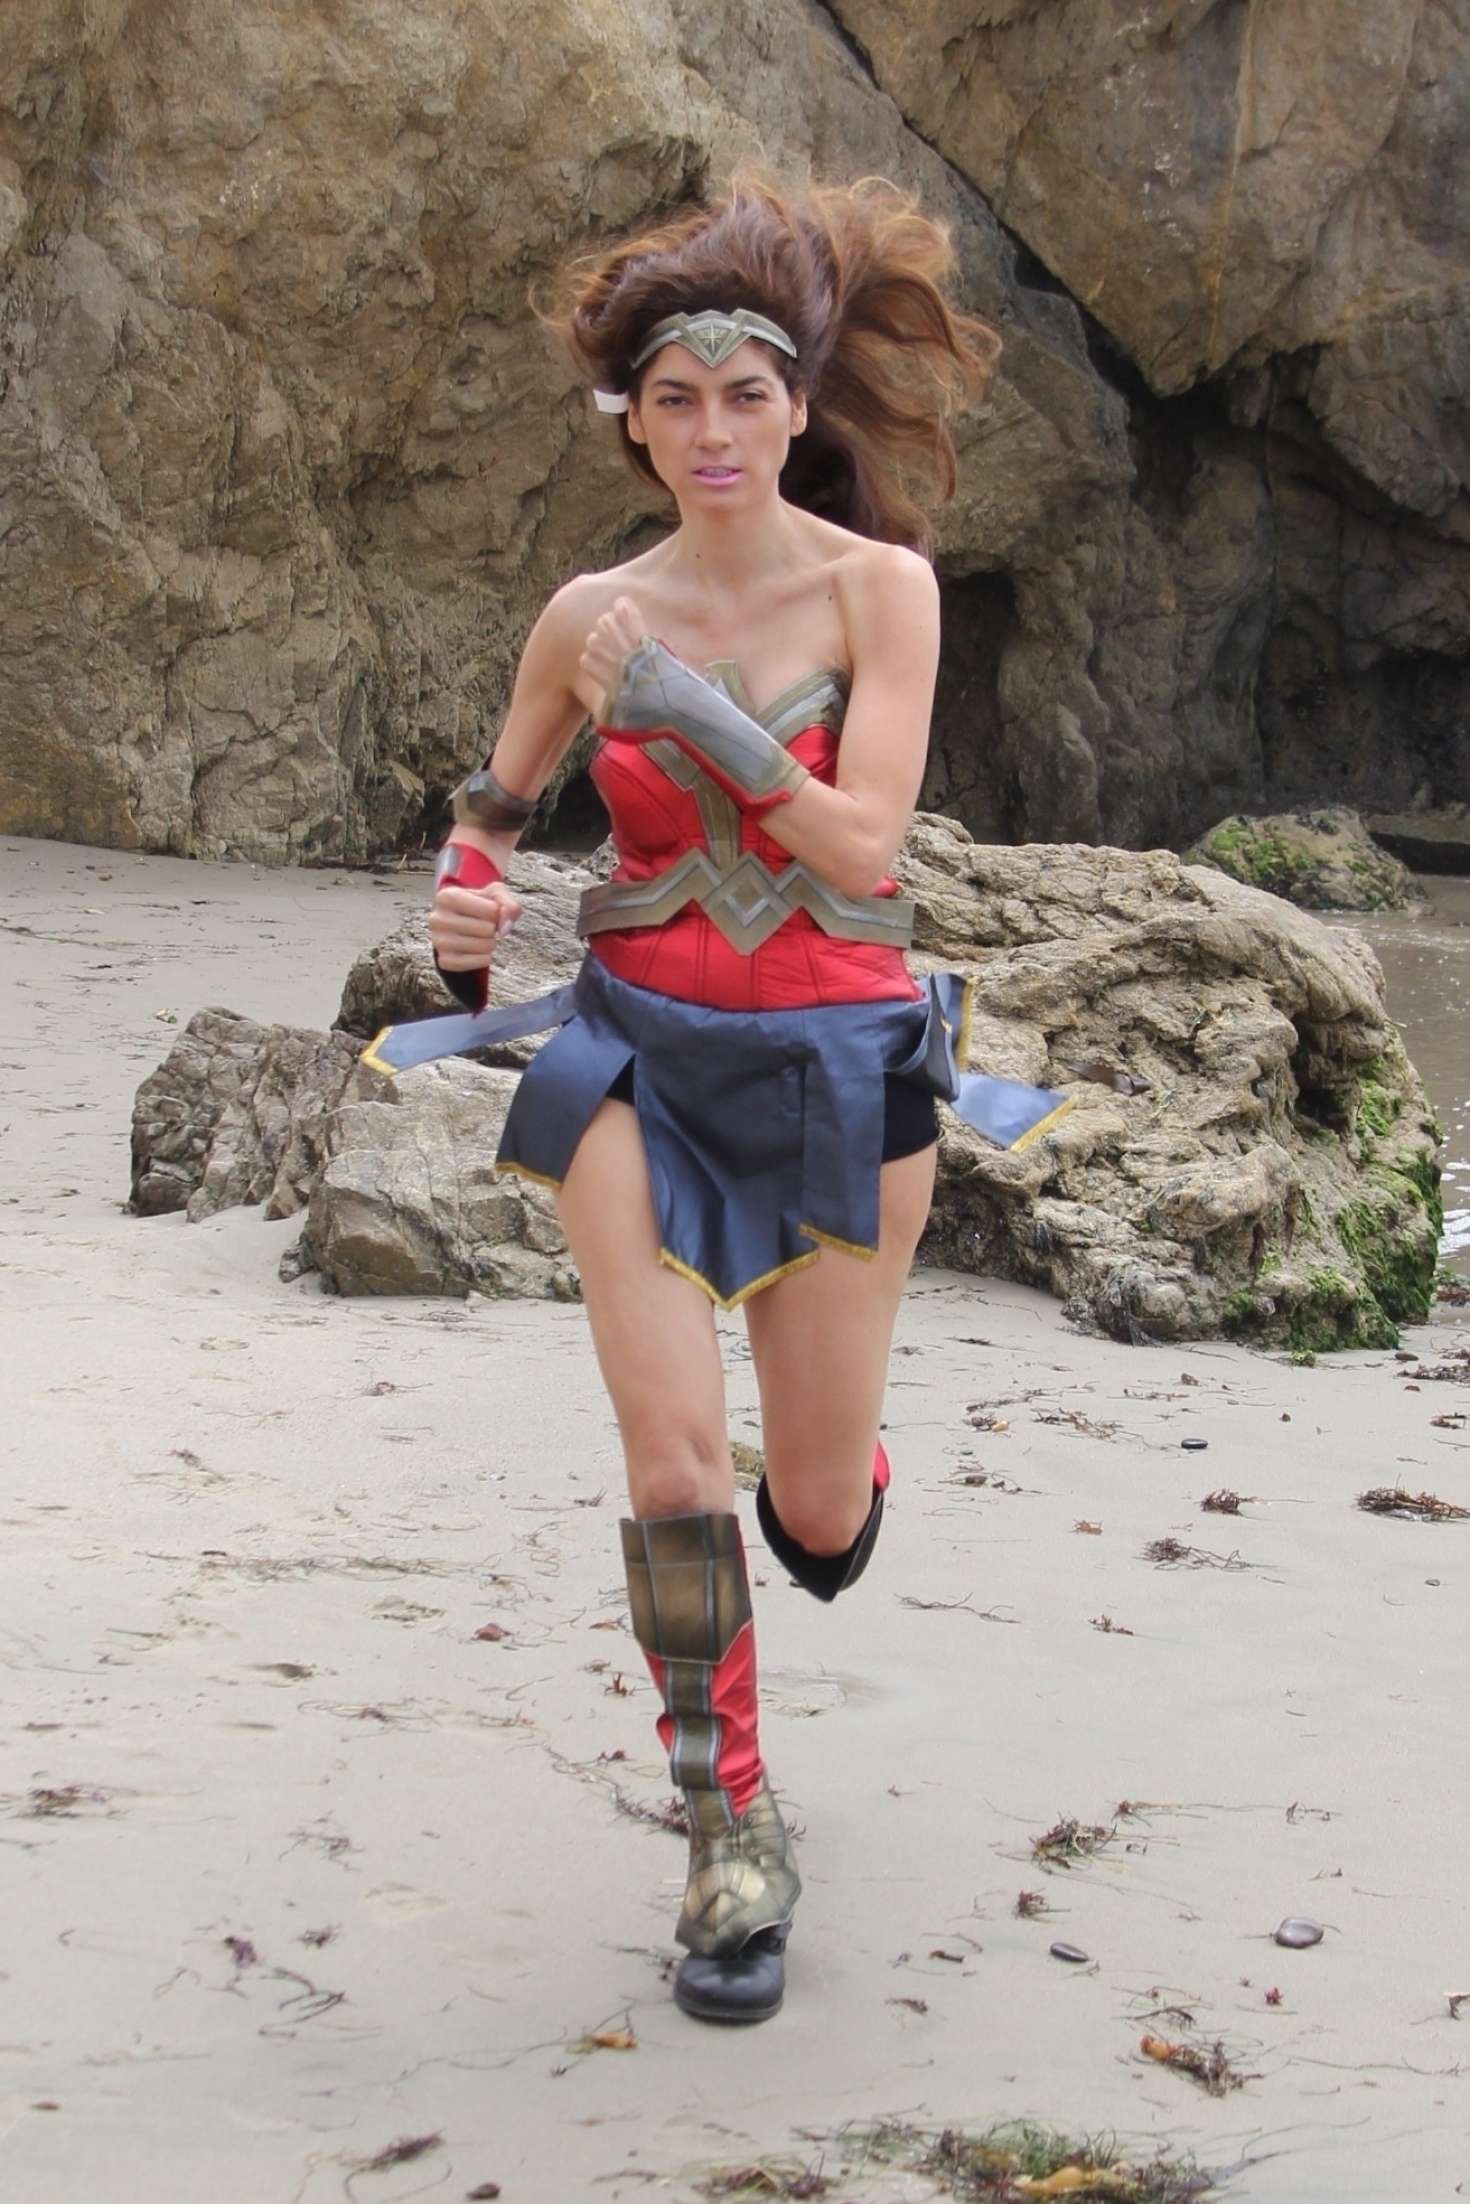 Blanca Blanco as a Wonder Woman on the beach in Malibu